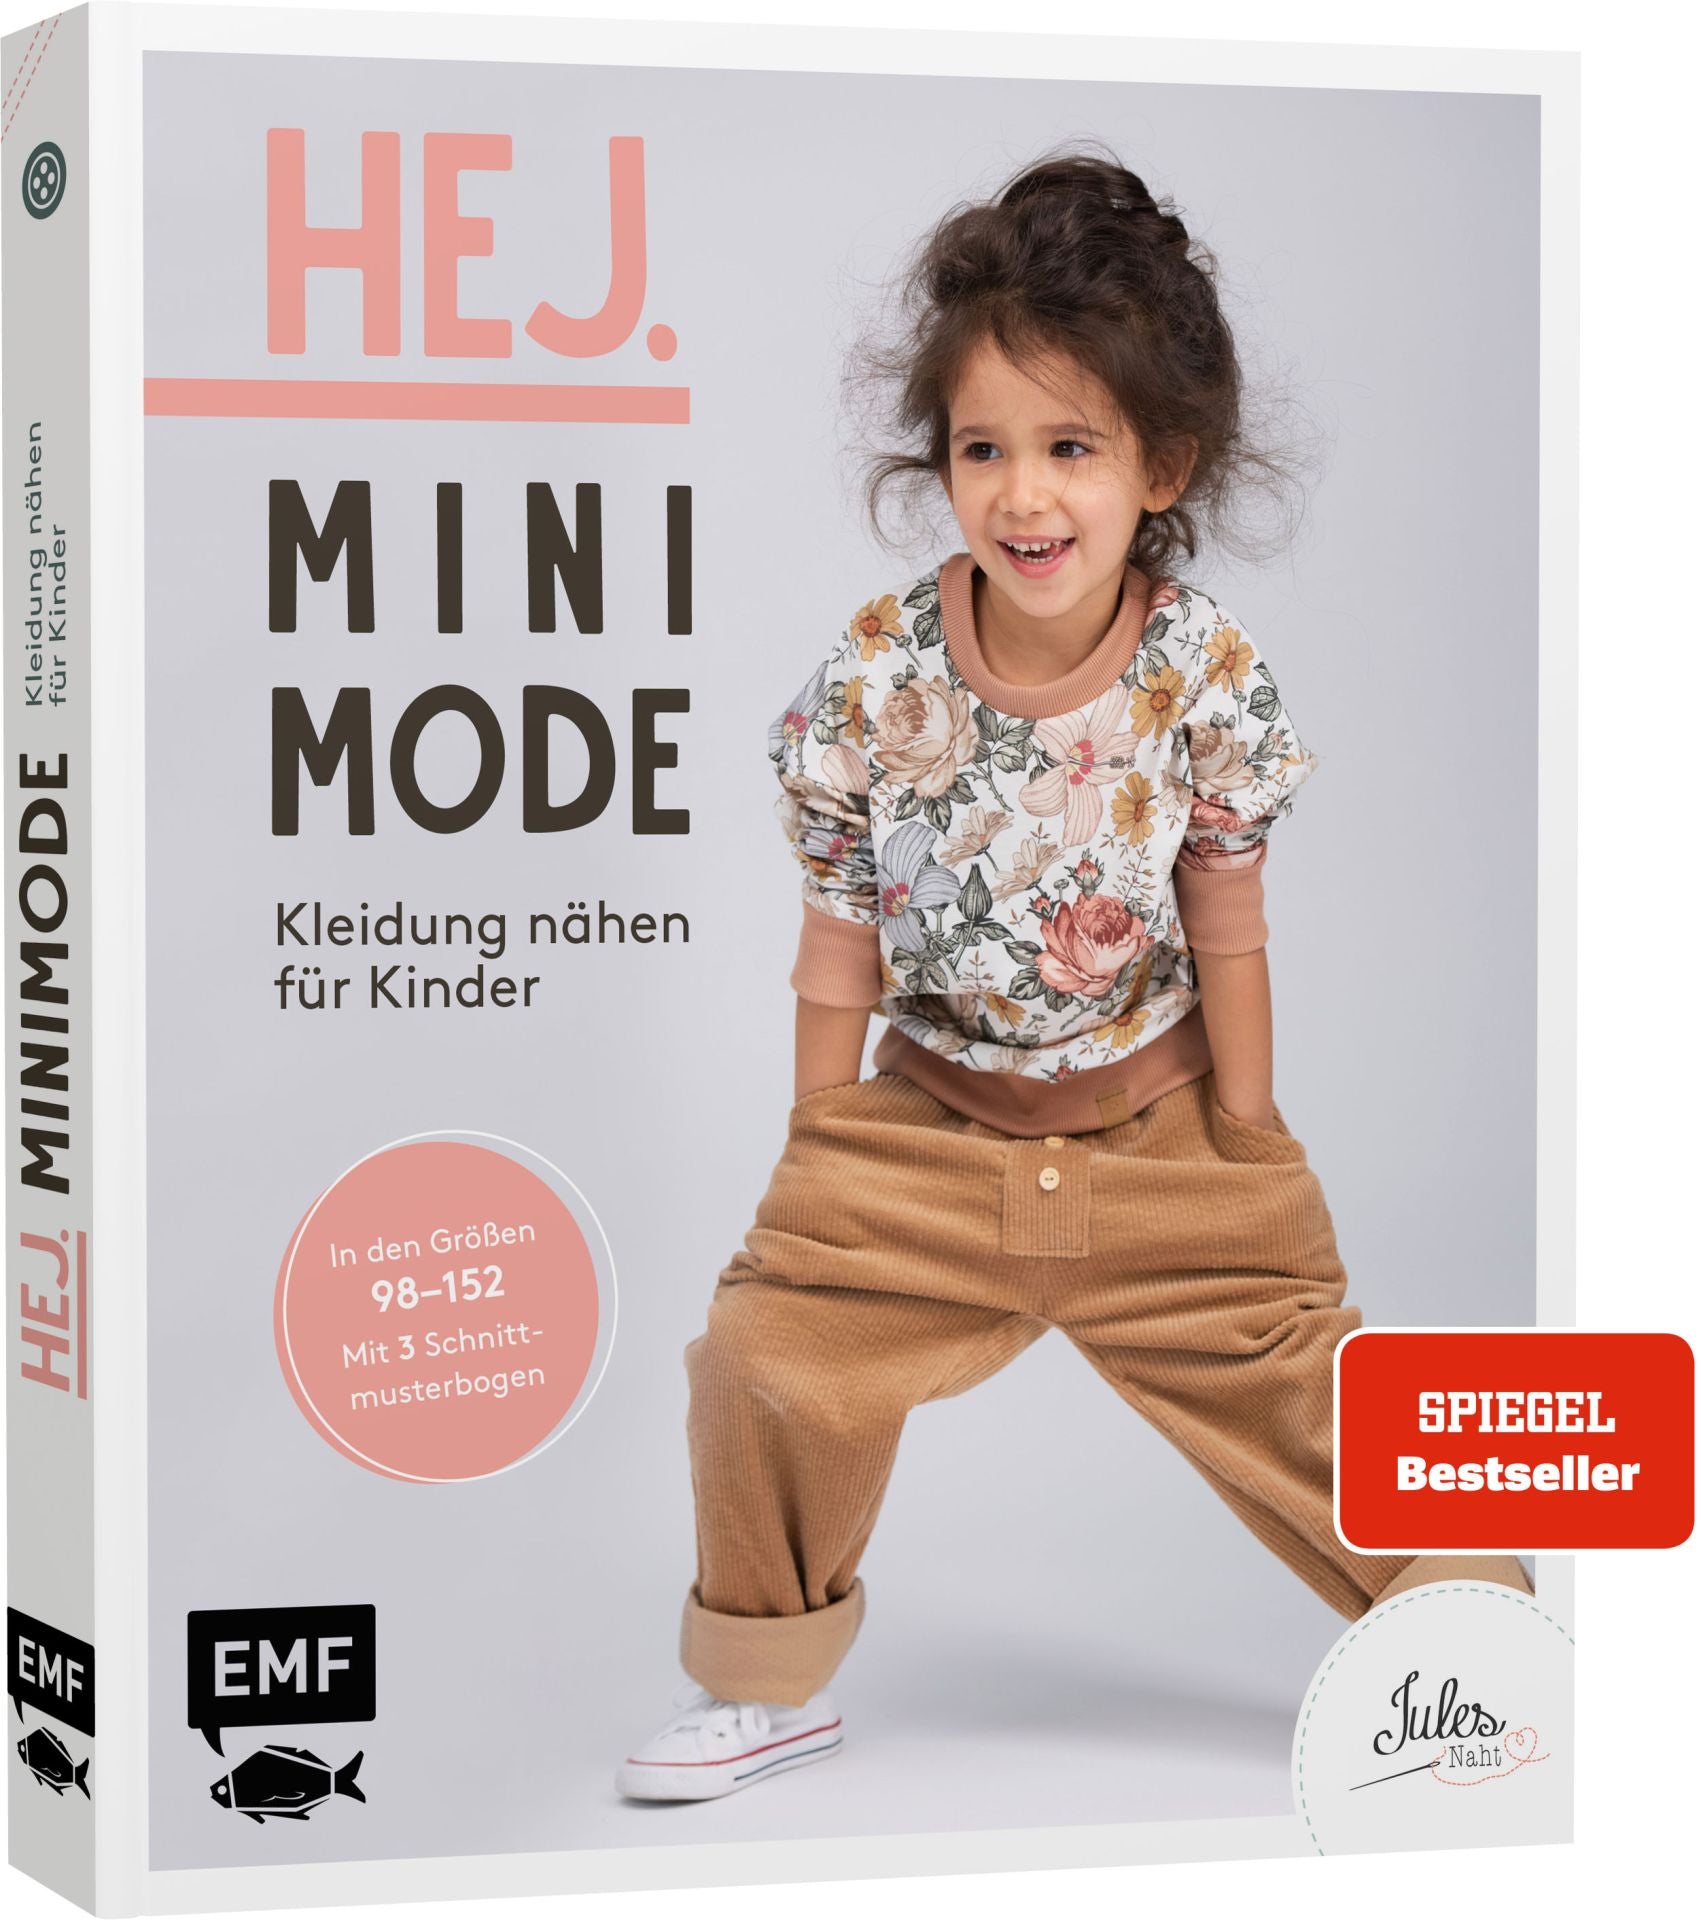 Hej. Minimode – Kleidung nähen für Kinder - Würfel & Mütze